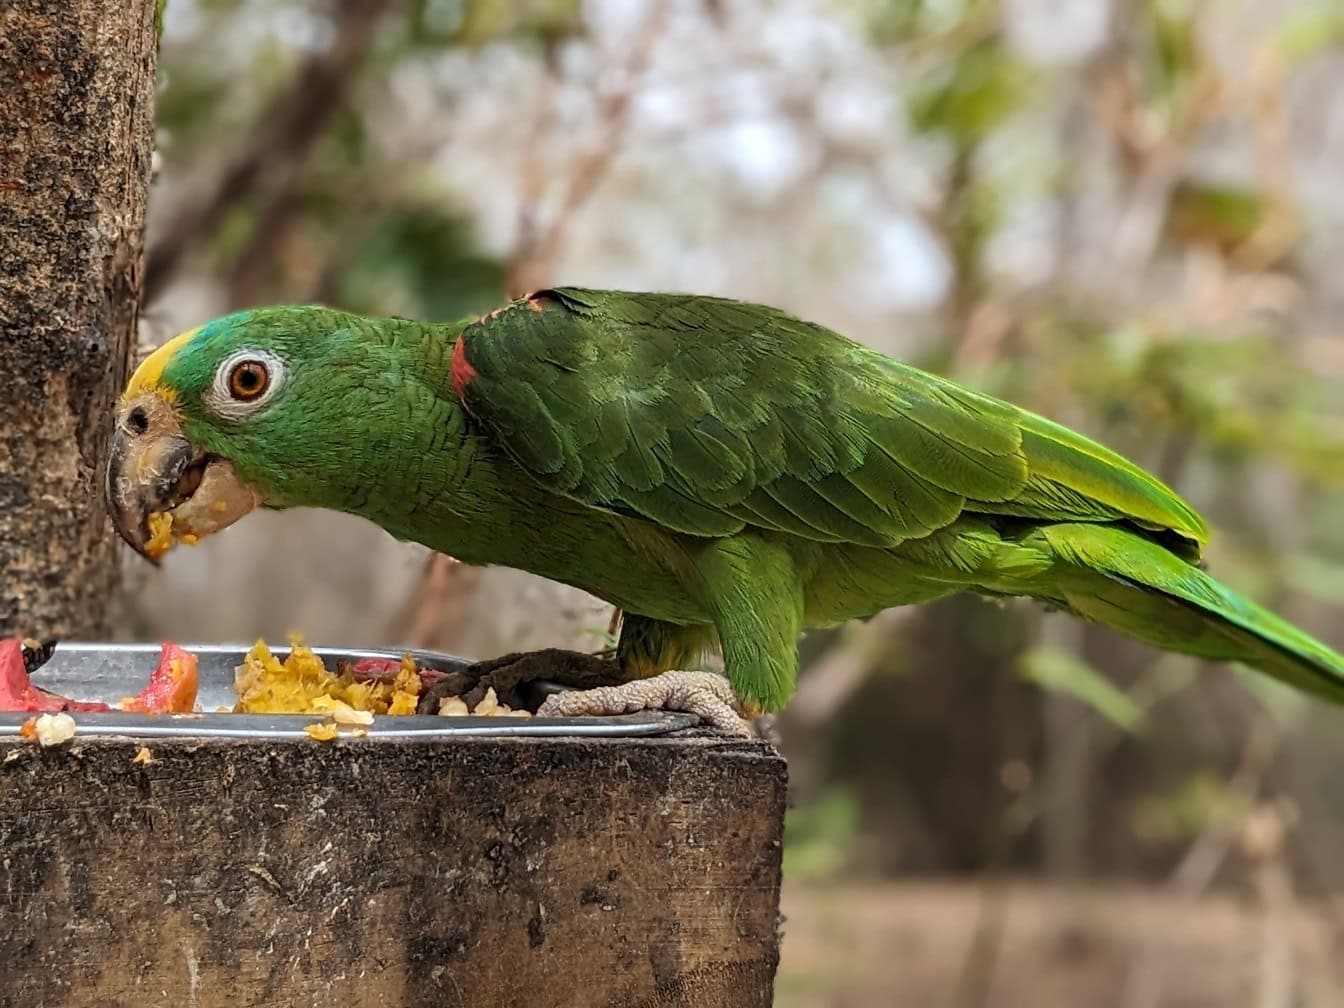 Le perroquet amazone du Panama, également connu sous le nom d’oiseau amazone à tête jaune du Panama, (Amazona ochrocephala panamensis) un perroquet vert mangeant de la nourriture